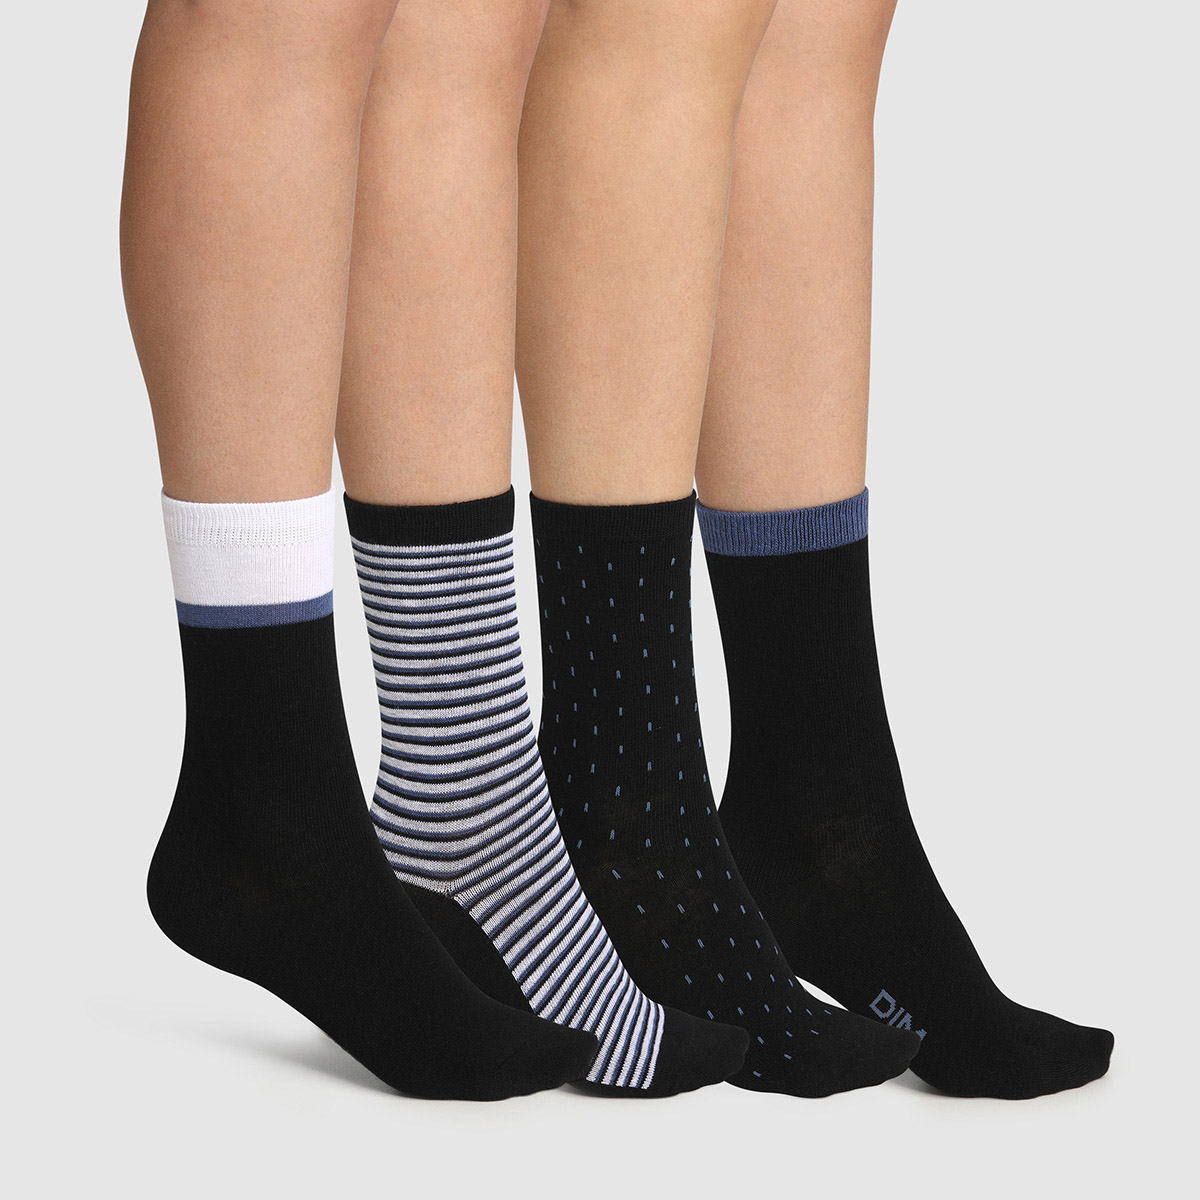 ILovDaisy Lot de 6 paires de chaussettes de sport pour homme et femme -  39-42 35-38 - En coton - Unisexe - Respirantes - Blanc/noir/gris/noir